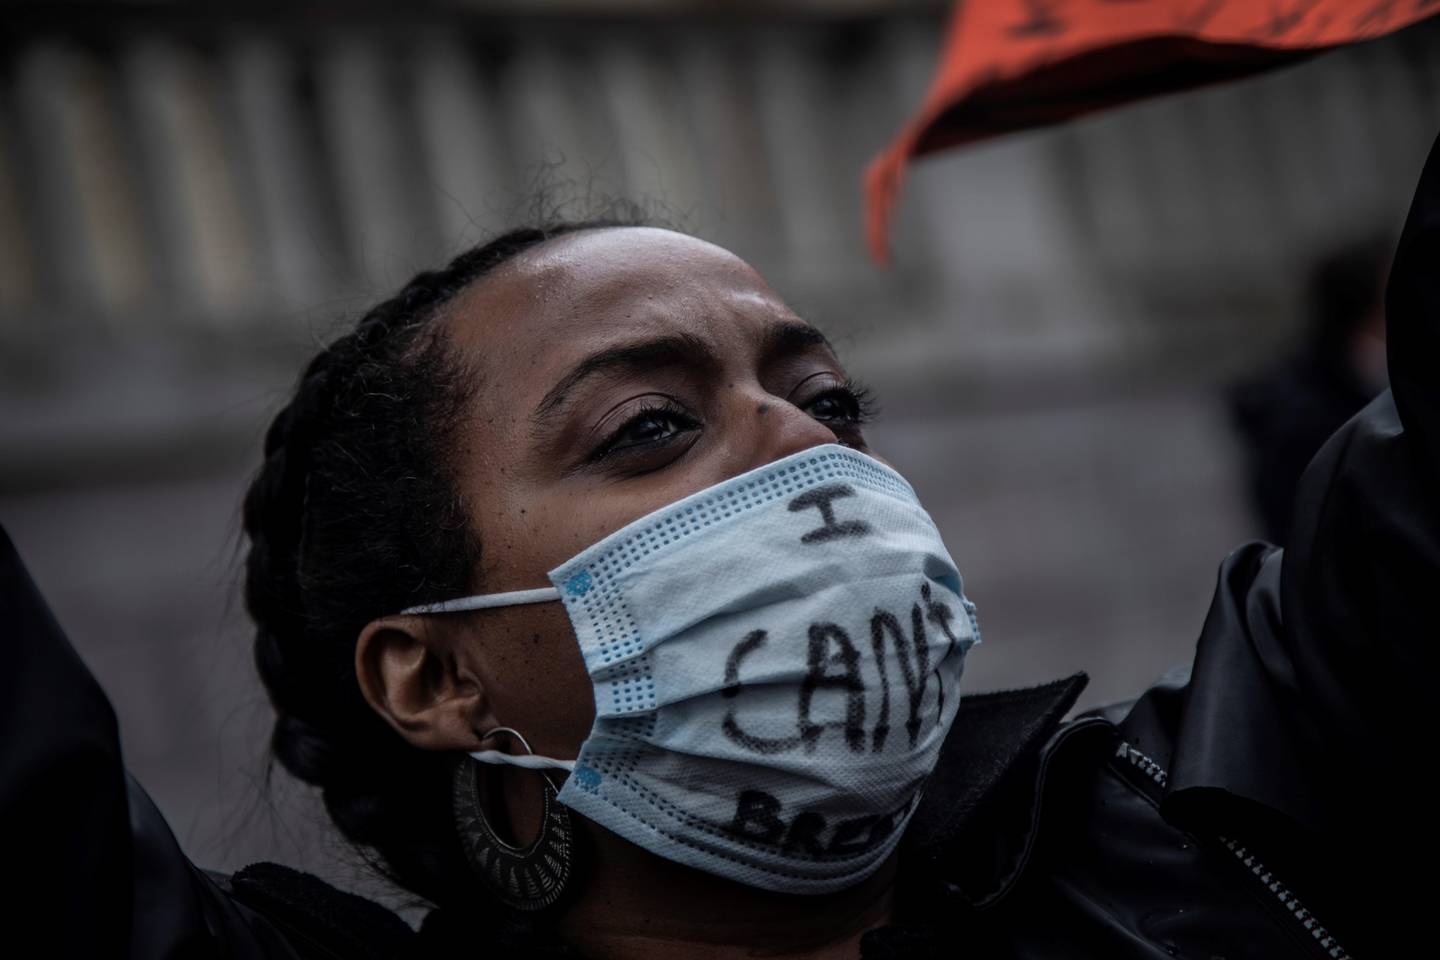 En demonstrant roper slagord under demonstrasjonen utenfor Stortinget. På munnbindet står det «I can’t breathe», til minne om George Floyd.